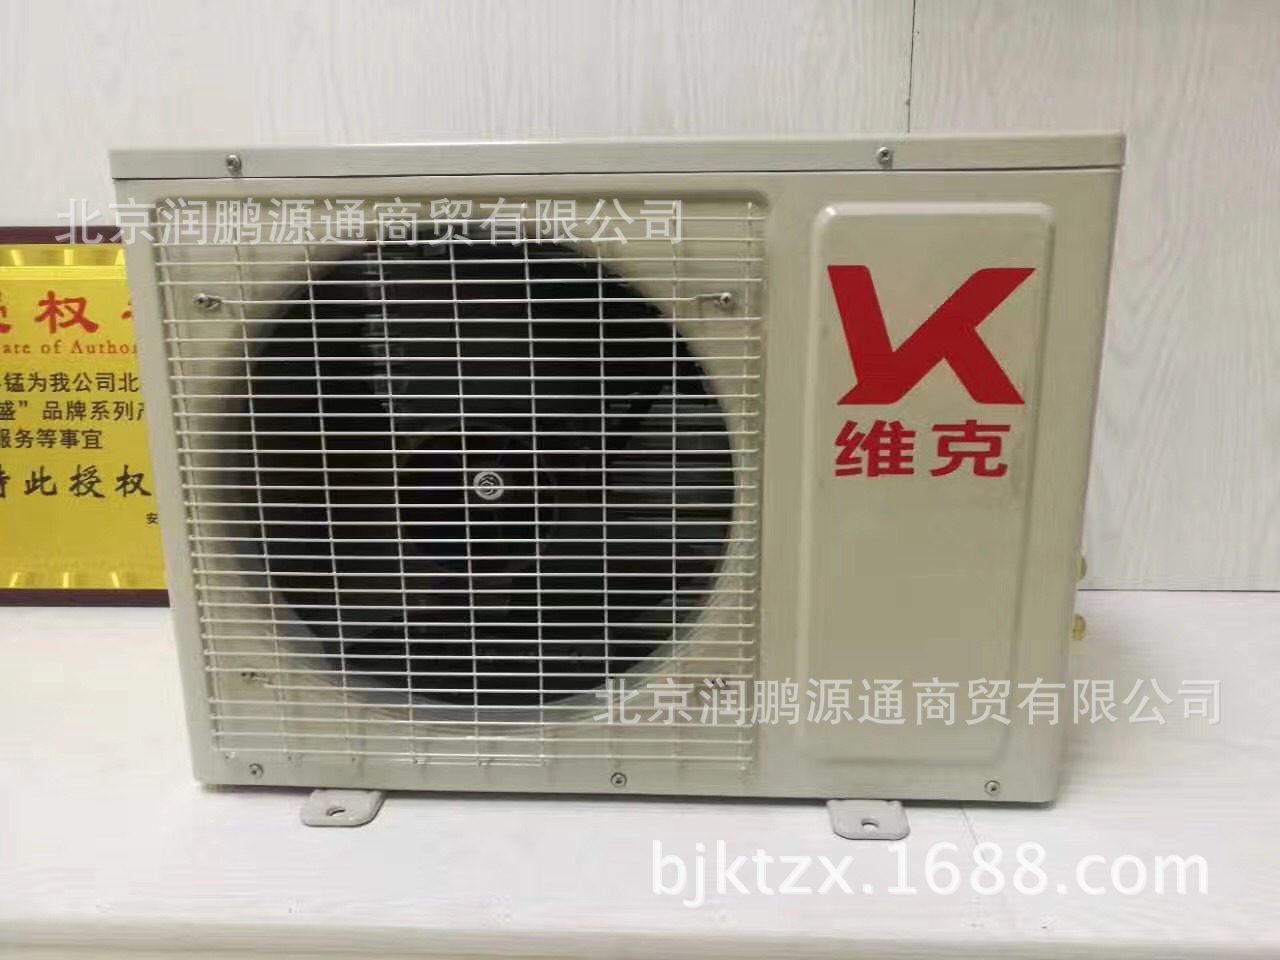 厂家直销KFR-23GW/DY-770DA一诺维克空调 定频壁挂式空调一件代示例图6